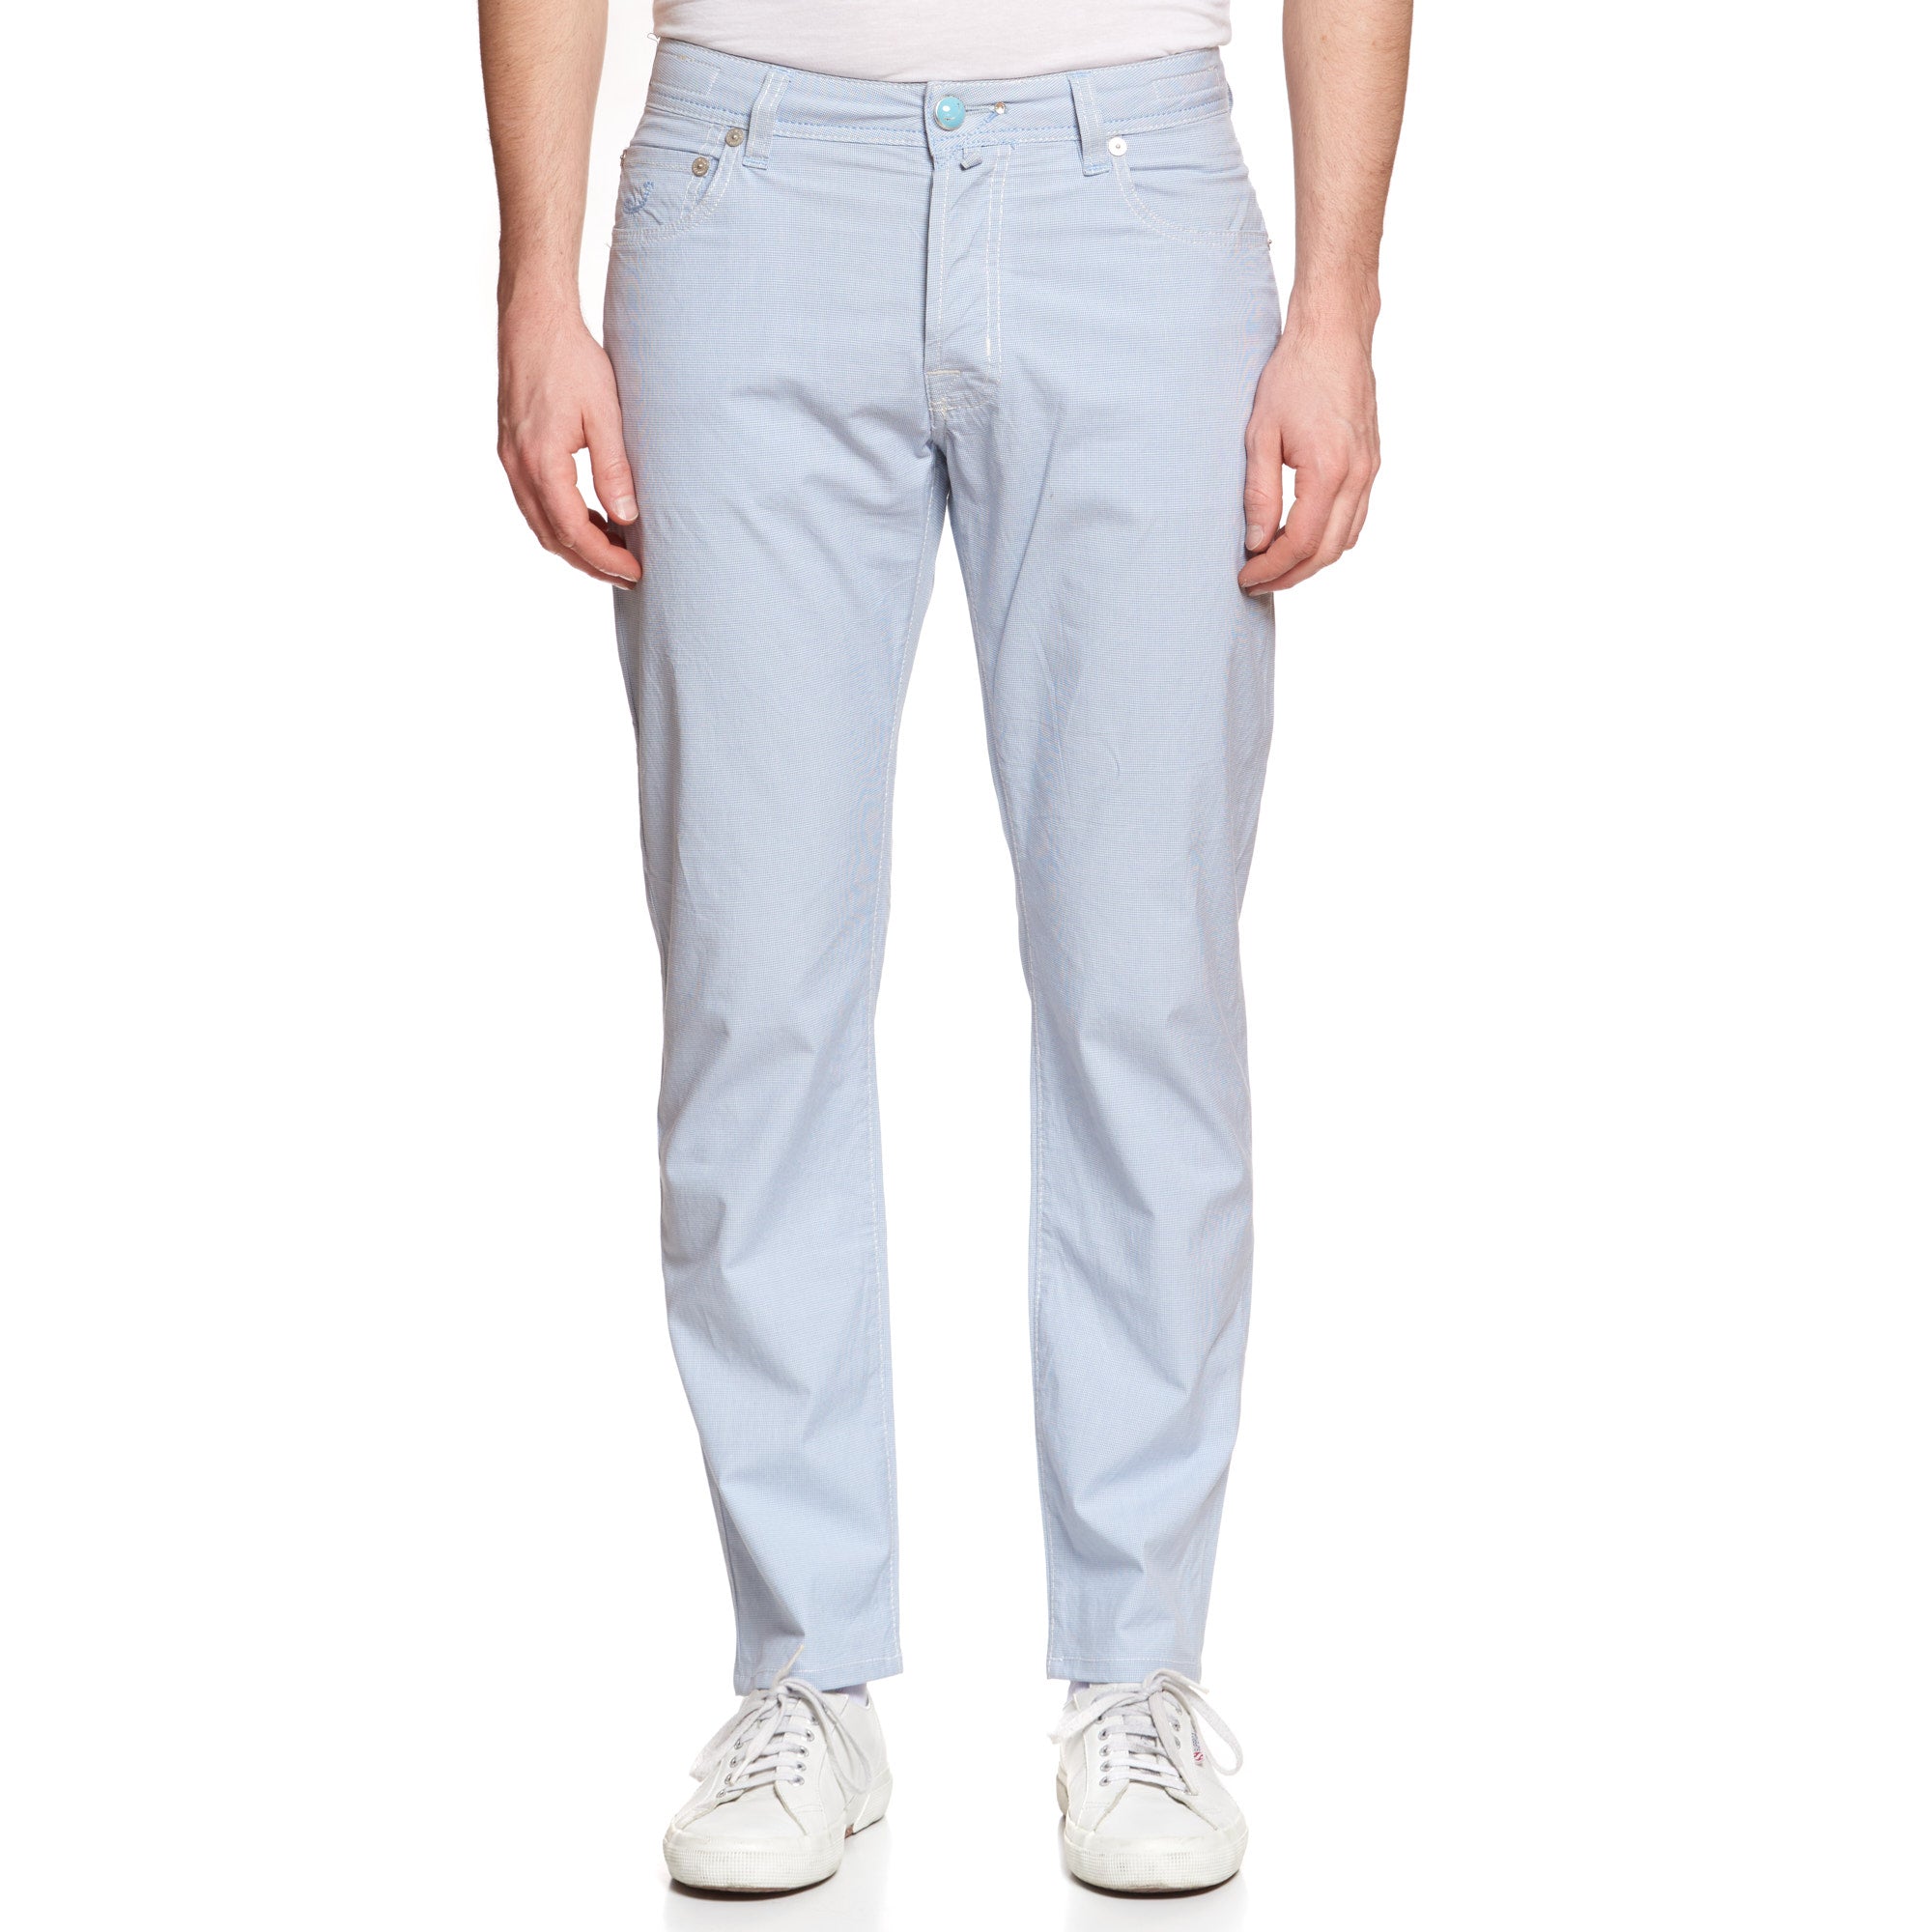 JACOB COHEN J688 Comfort Blue Cotton Stretch Slim Jeans Pants US 34